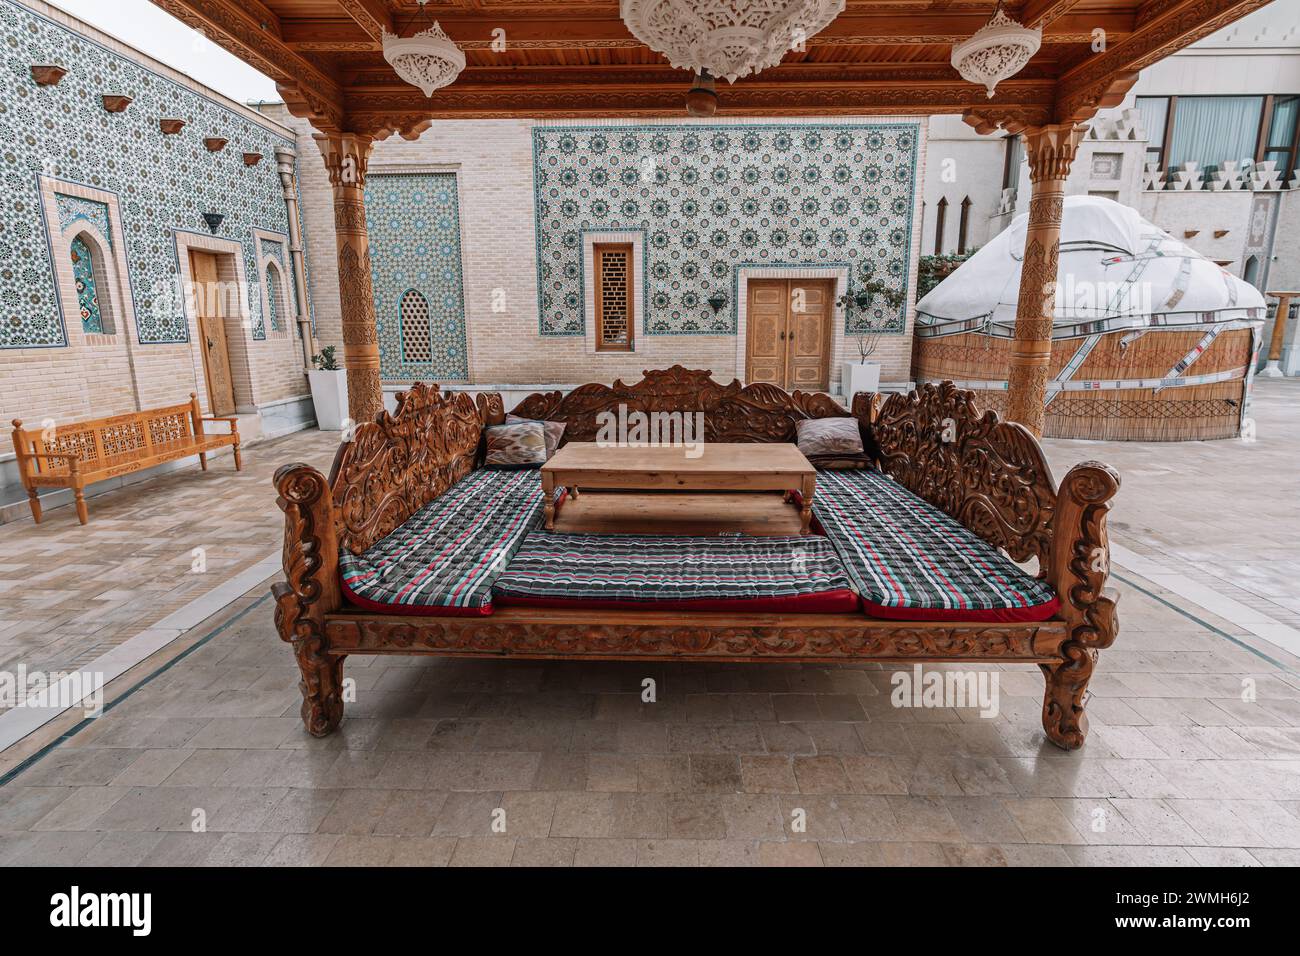 Tapchan - lieu traditionnel pour manger en Ouzbékistan et en Asie centrale. Banque D'Images